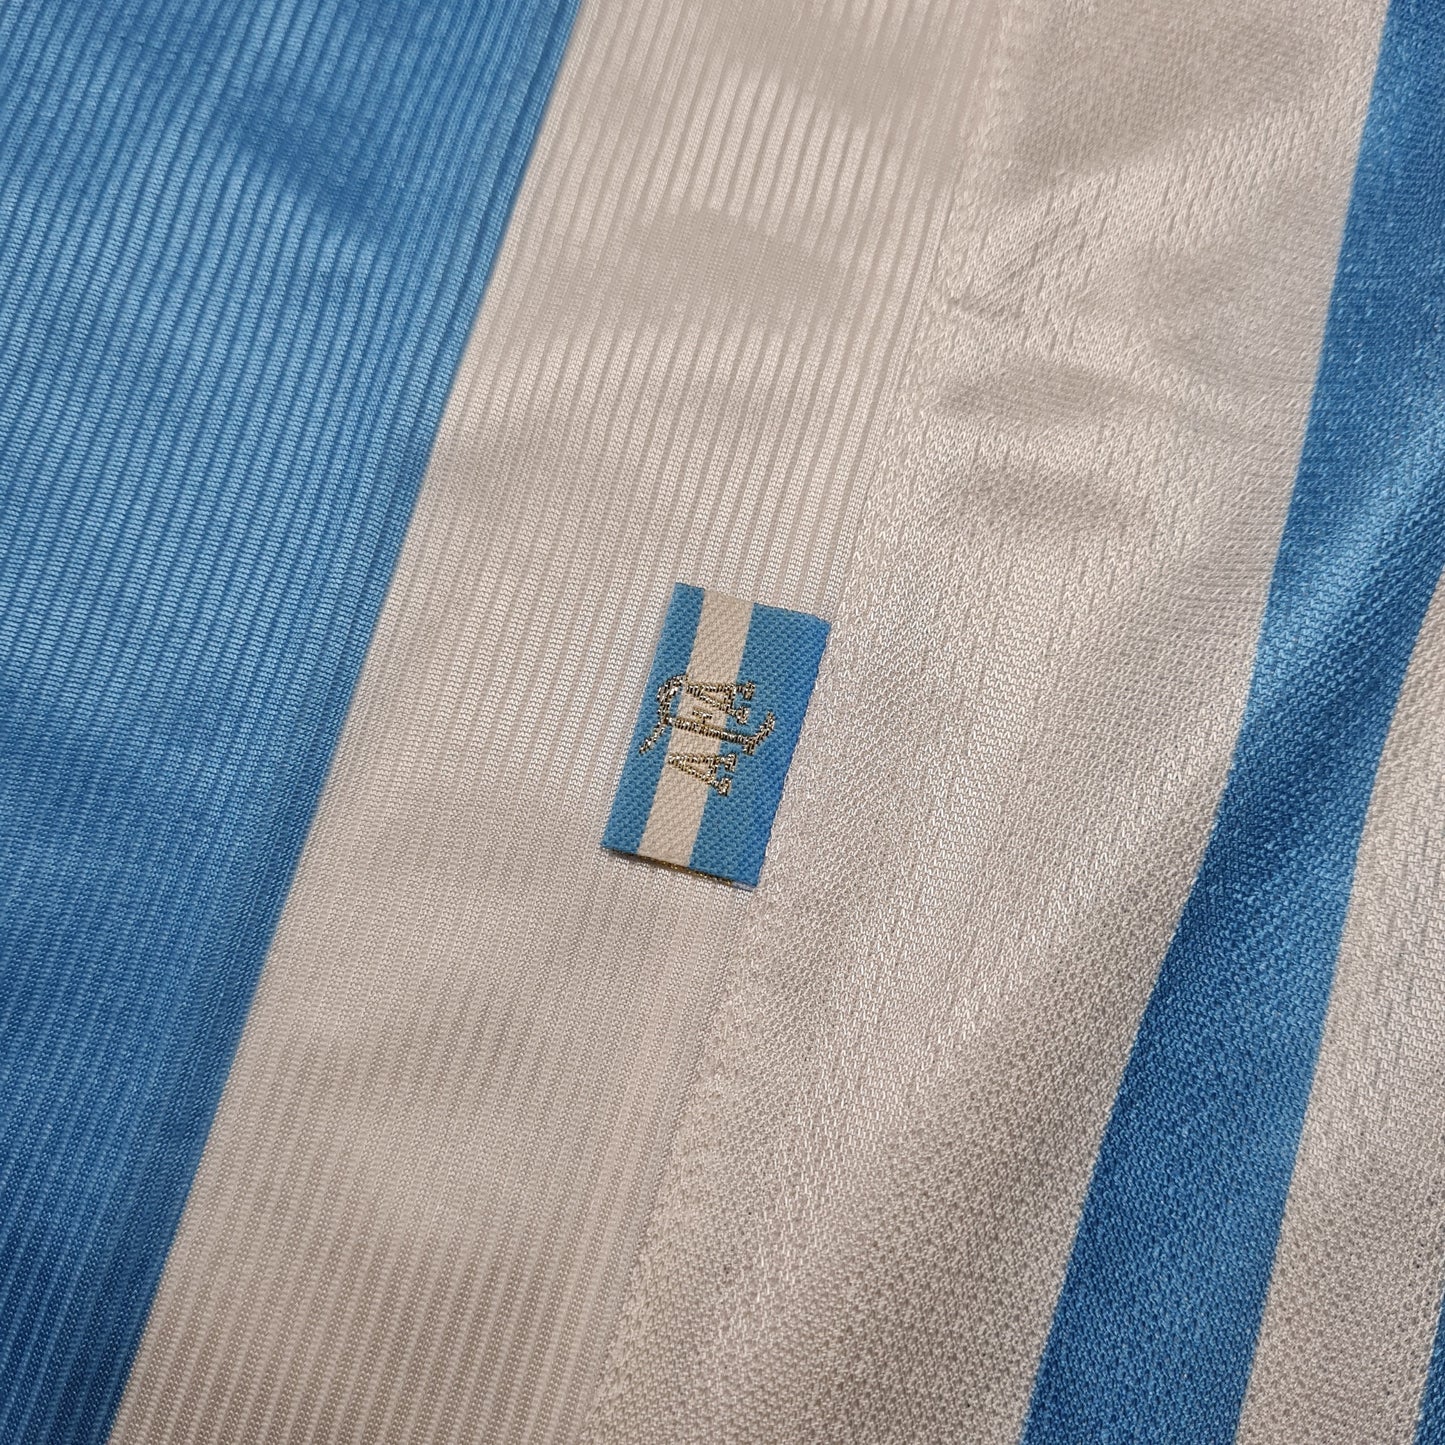 Argentina Titular 1998 ✈️ - Thunder Internacional